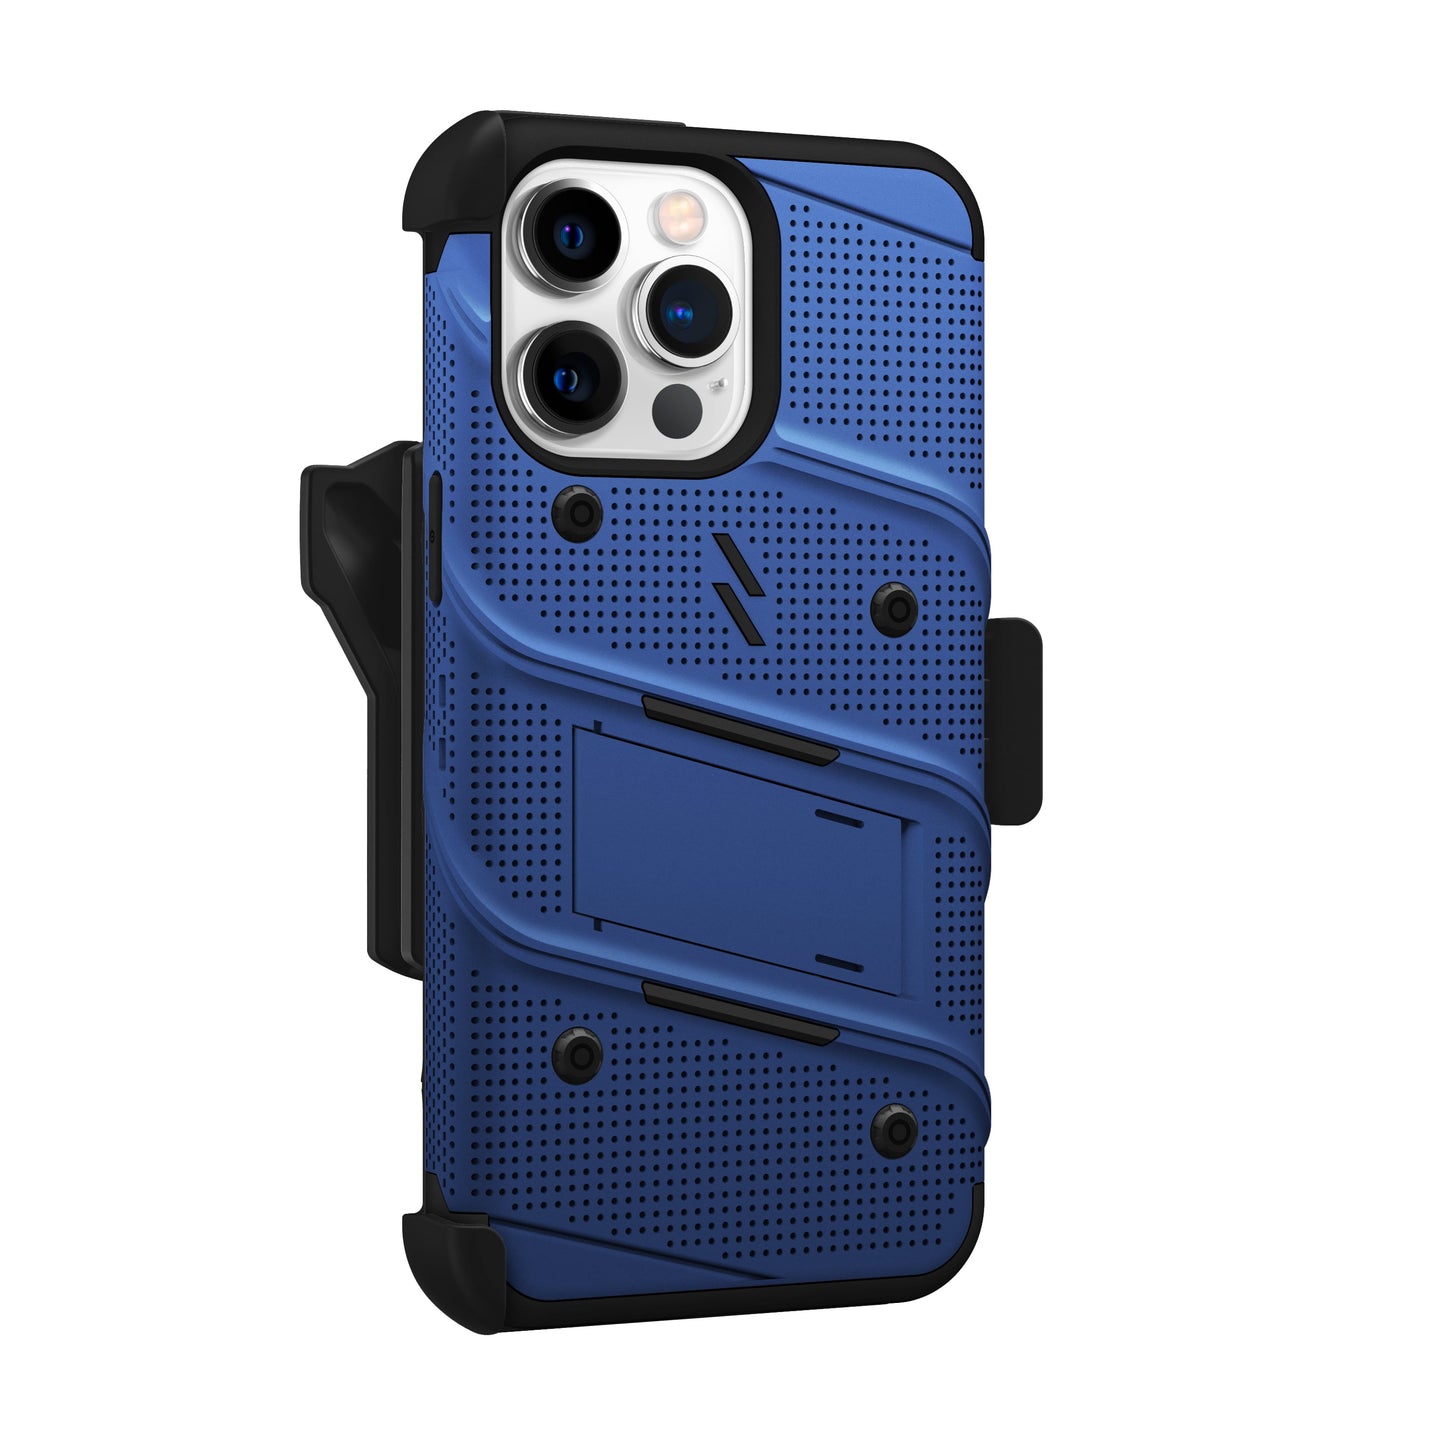 ZIZO BOLT Bundle iPhone 15 Pro Max Case - Blue